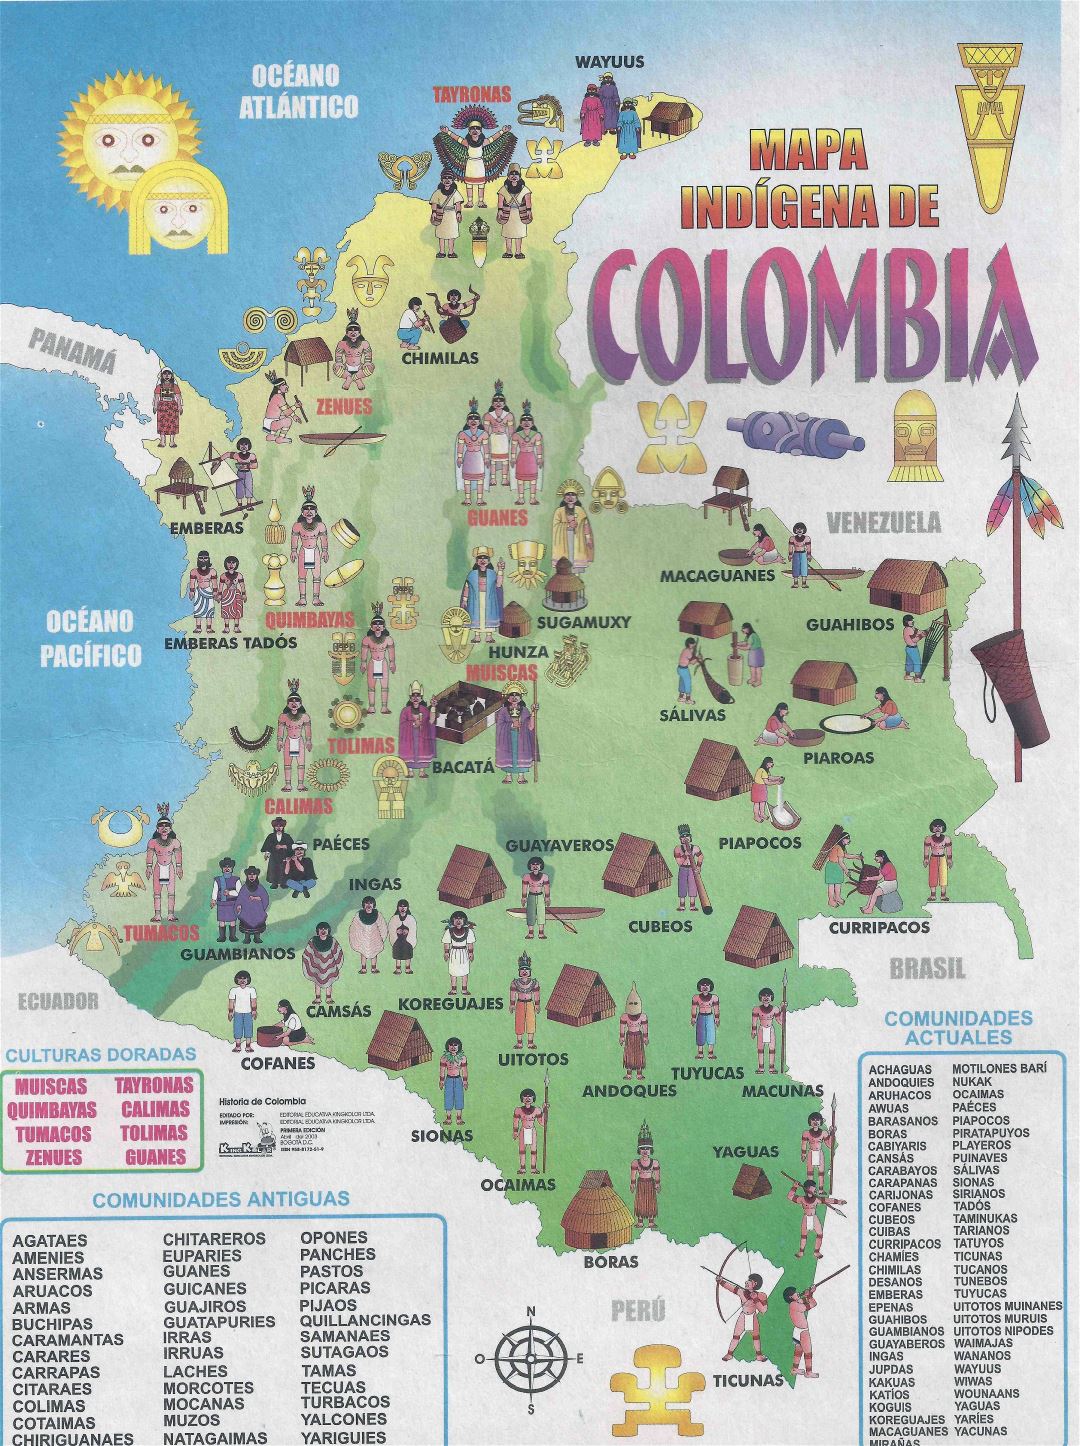 Большая детальная туристическая иллюстрированная карта Колумбии